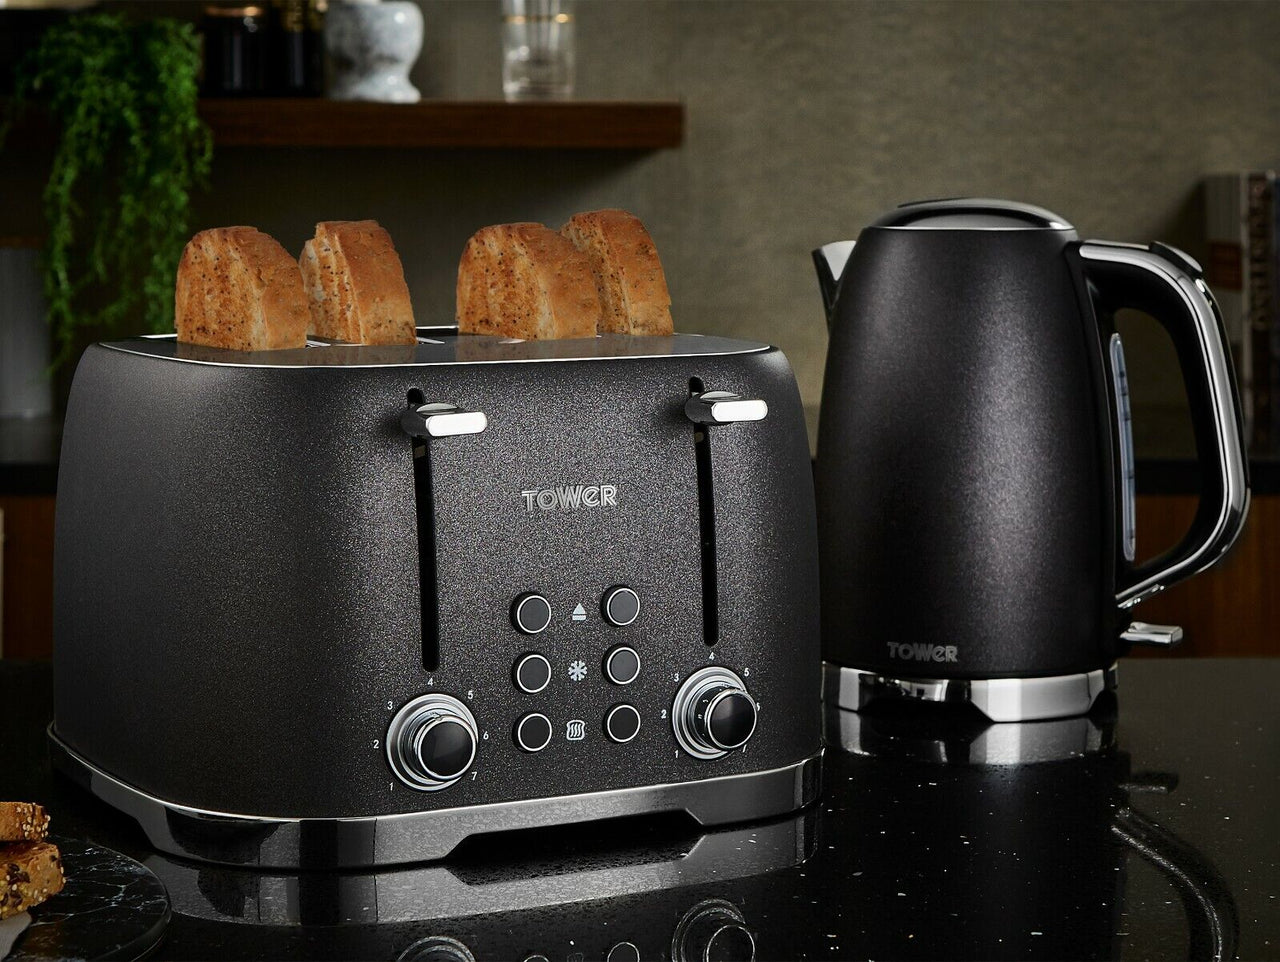 Tower Glitz Kettle Toaster  & Bread Bin Kitchen Set in Sparkling Black Noir